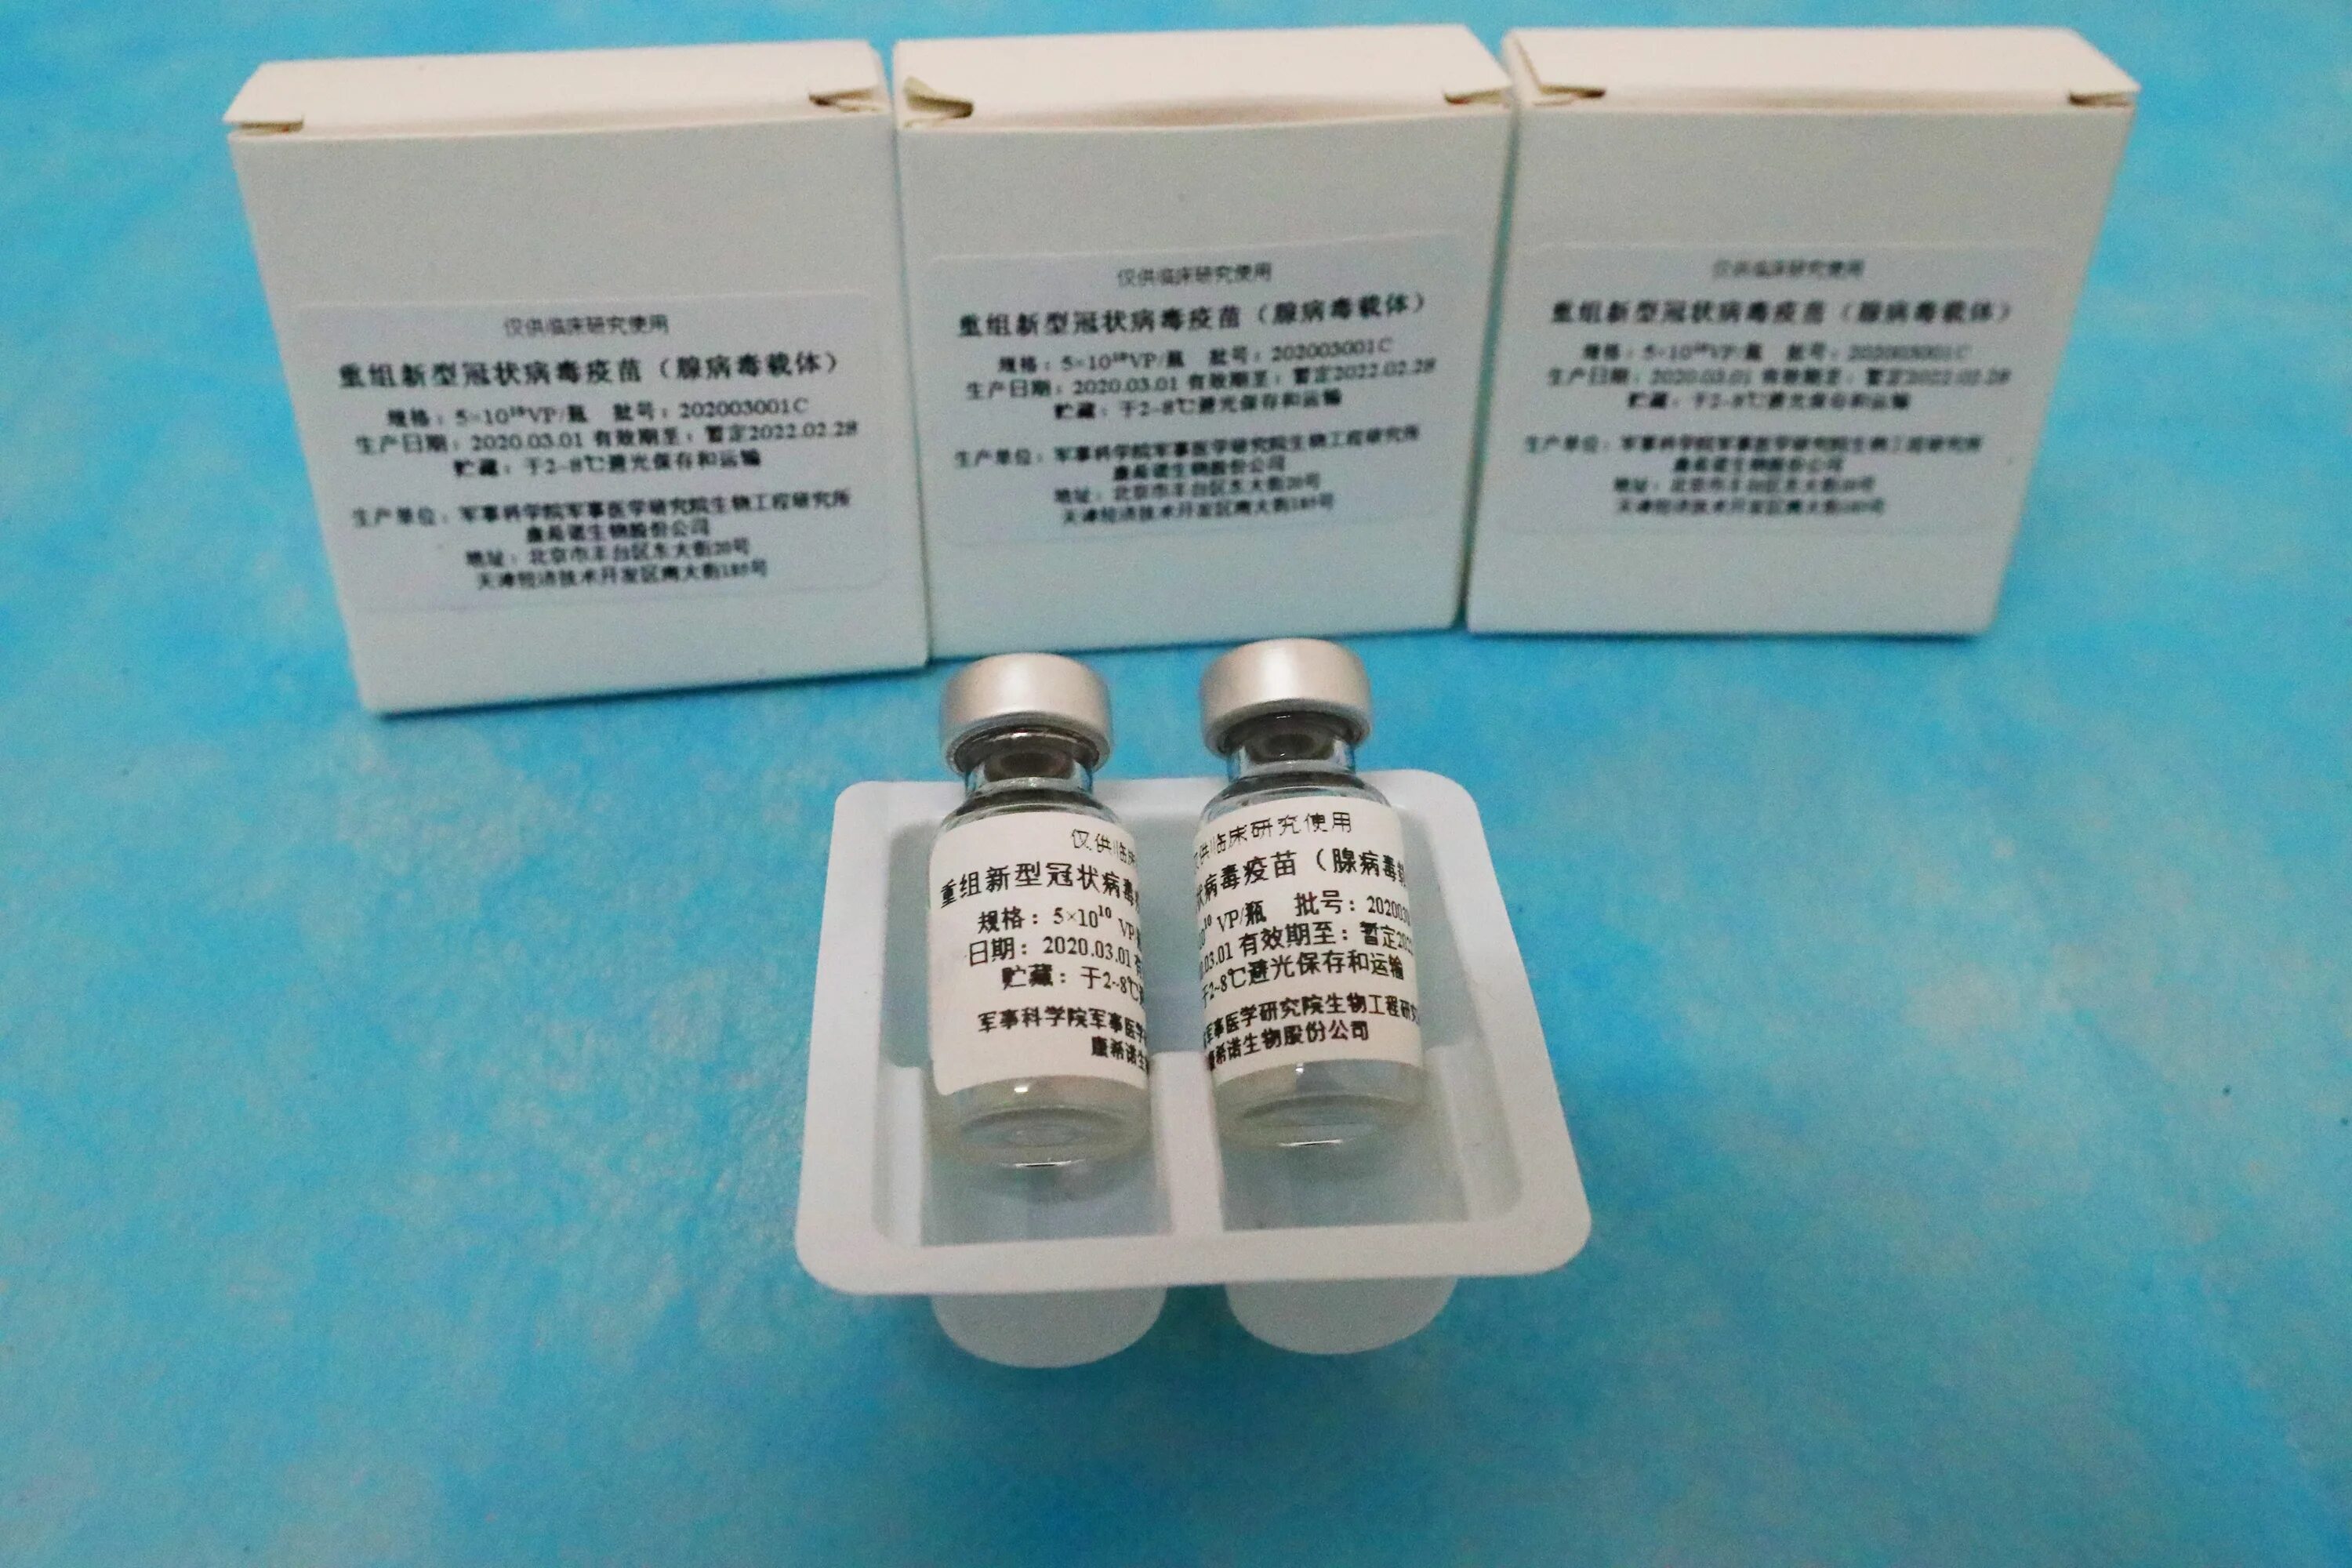 Первая вакцина от covid 19. Covid-19 вакцина китайская. Китайская вакцина от коронавируса. Вакцина Cansino biologics. Китайская вакцина от ковид название.